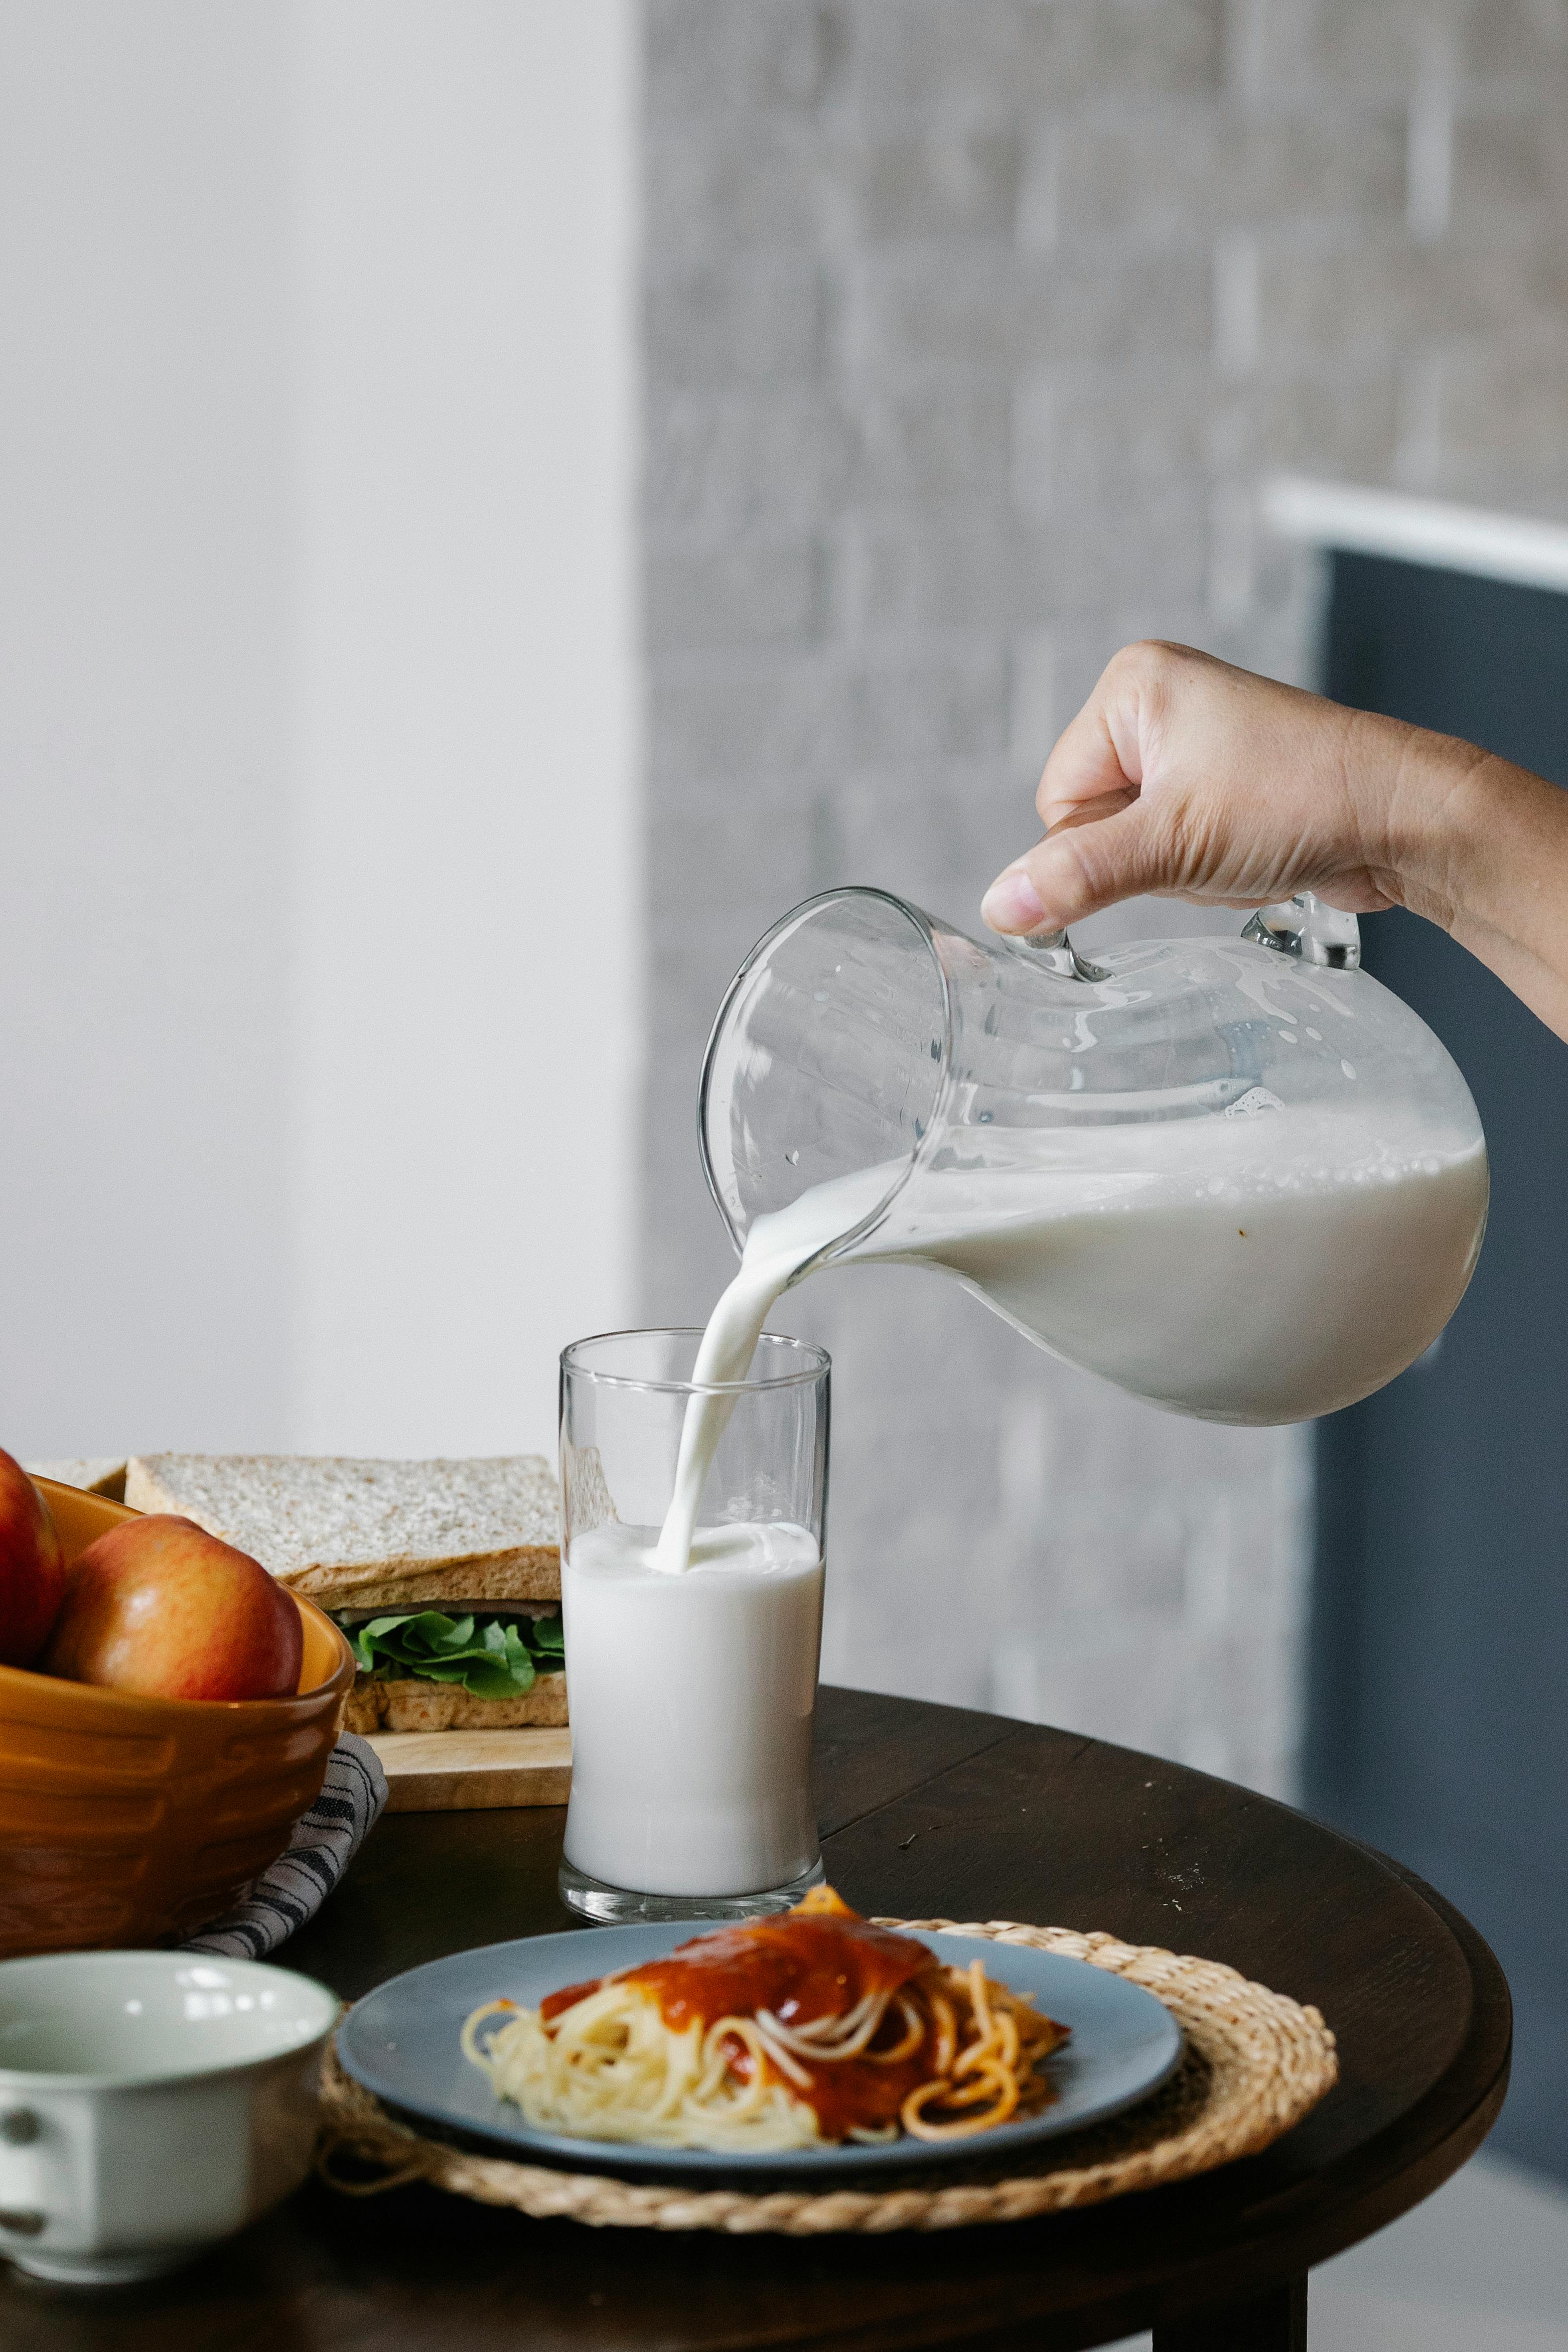 crop person pouring milk in kitchen